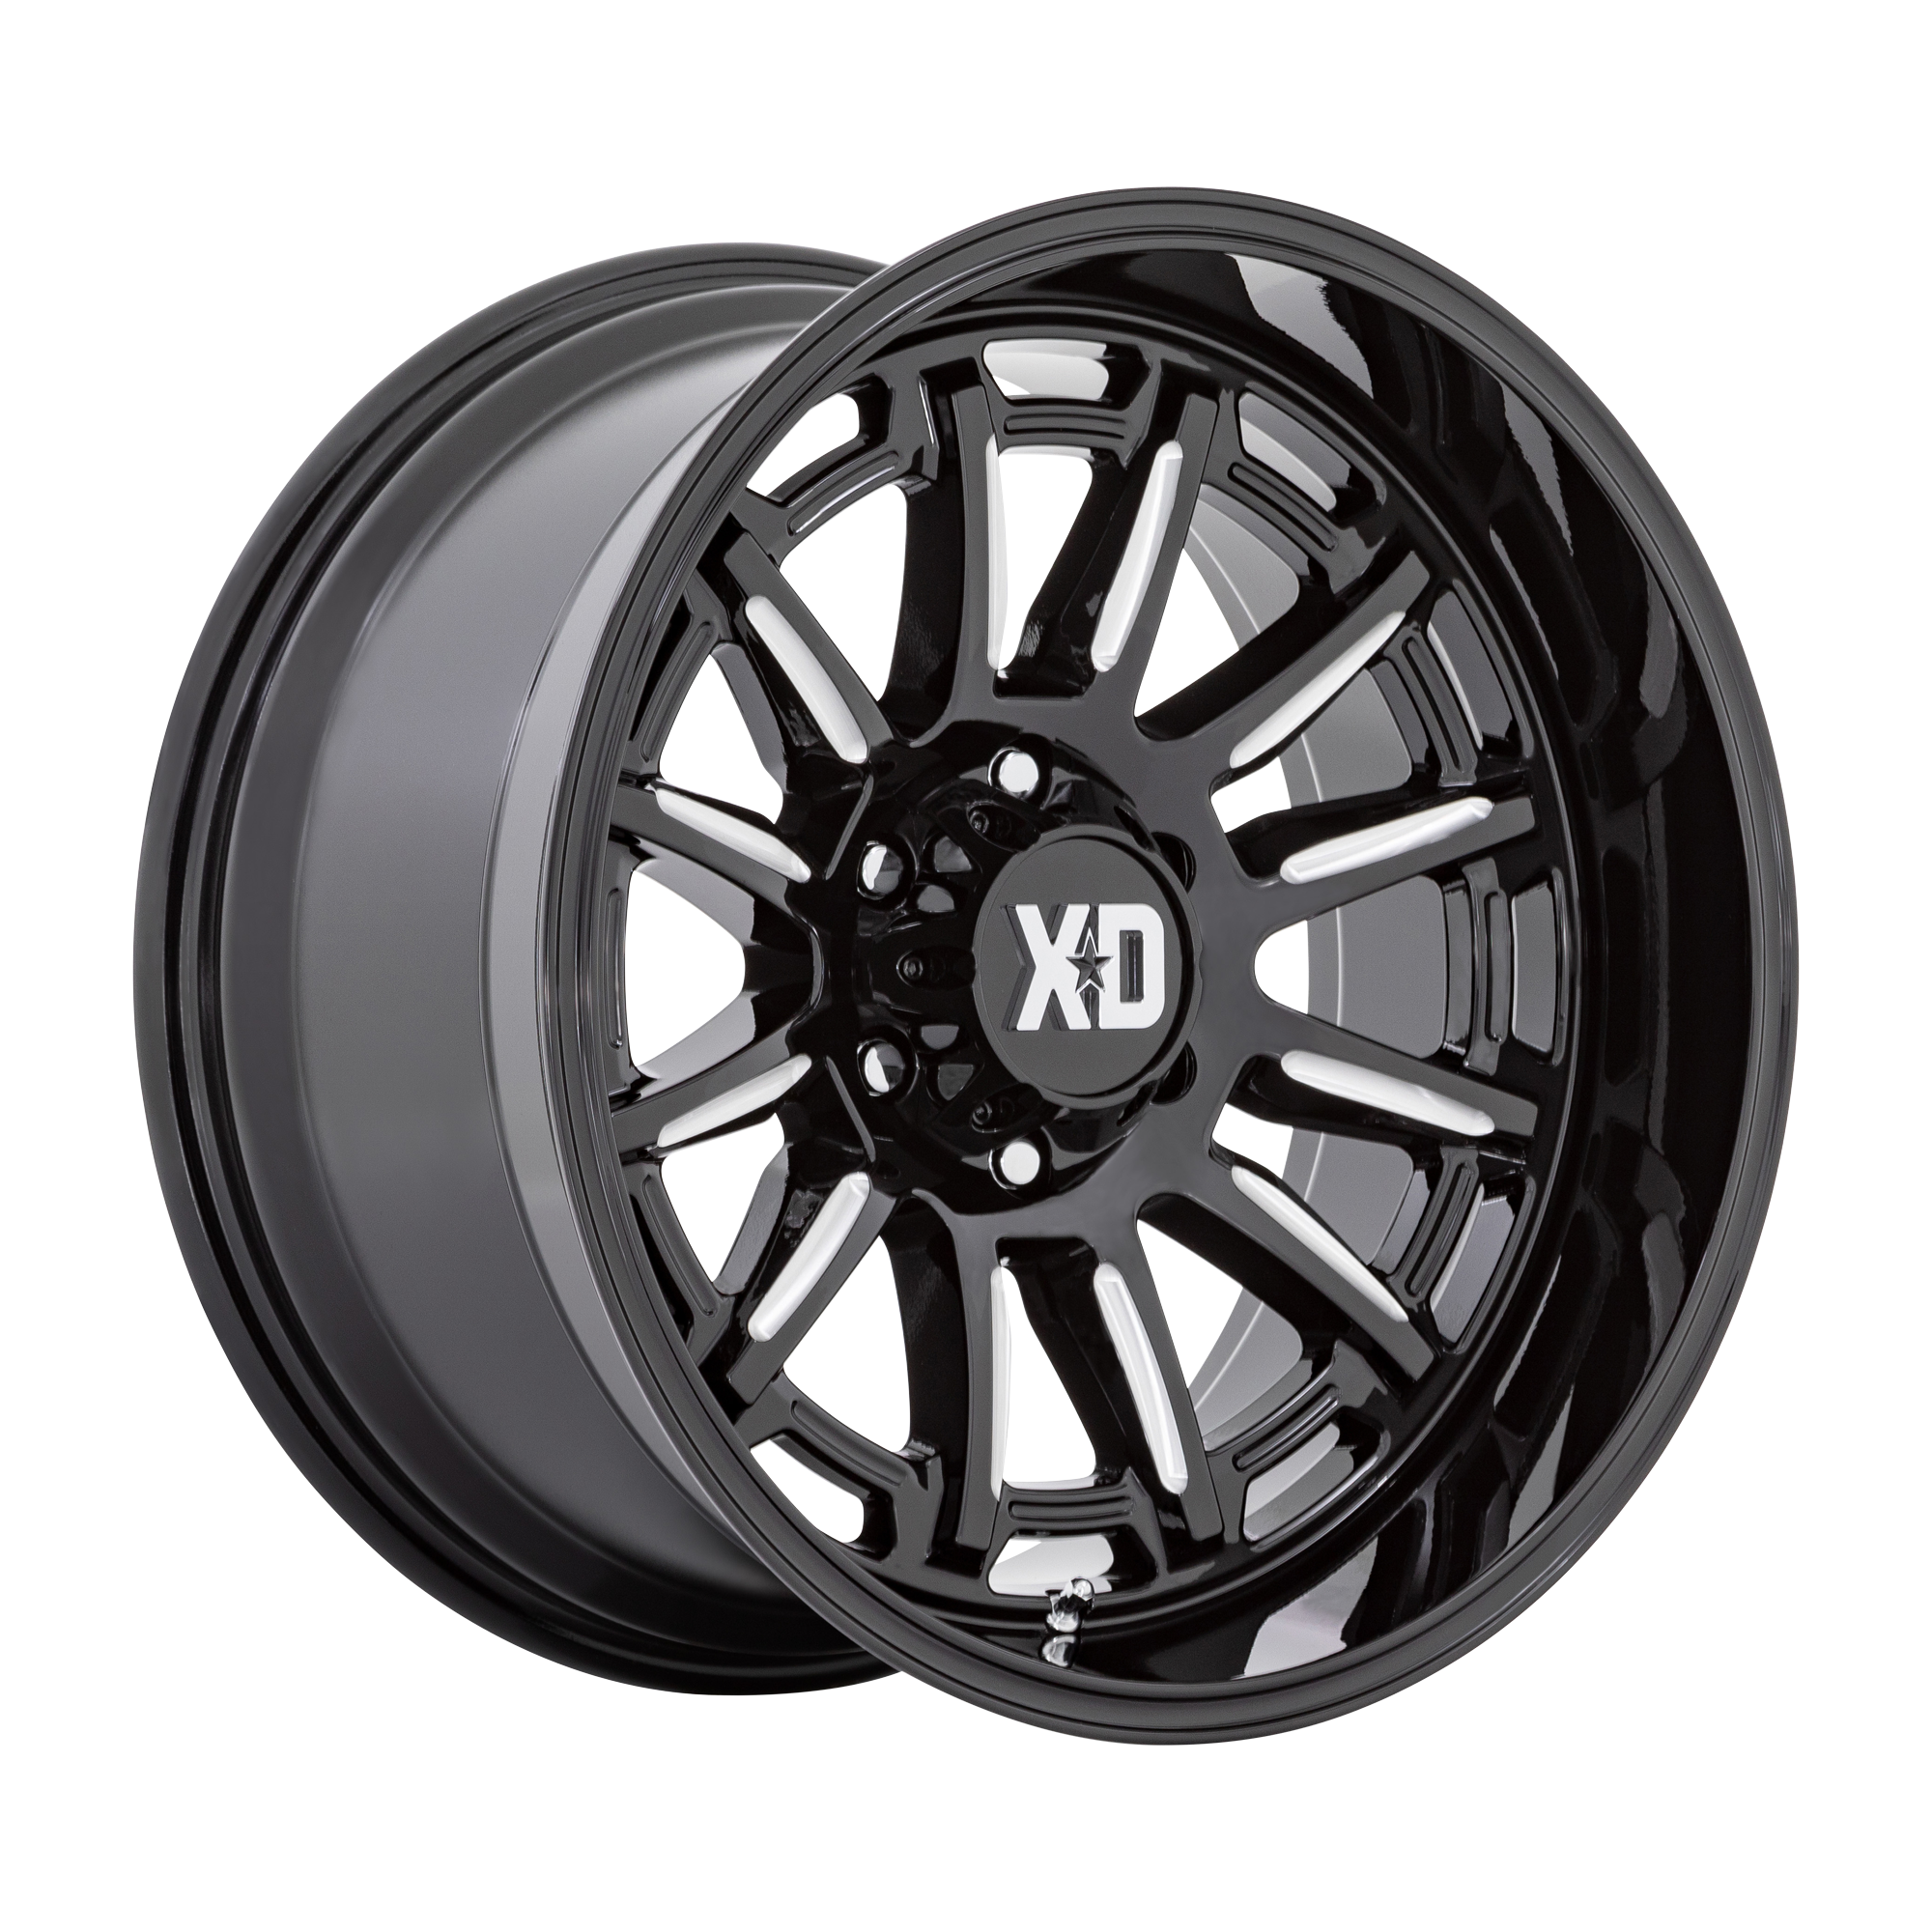 XD 20"x10" Non-Chrome Gloss Black Milled Custom Wheel ARSWCWXD86521063318N